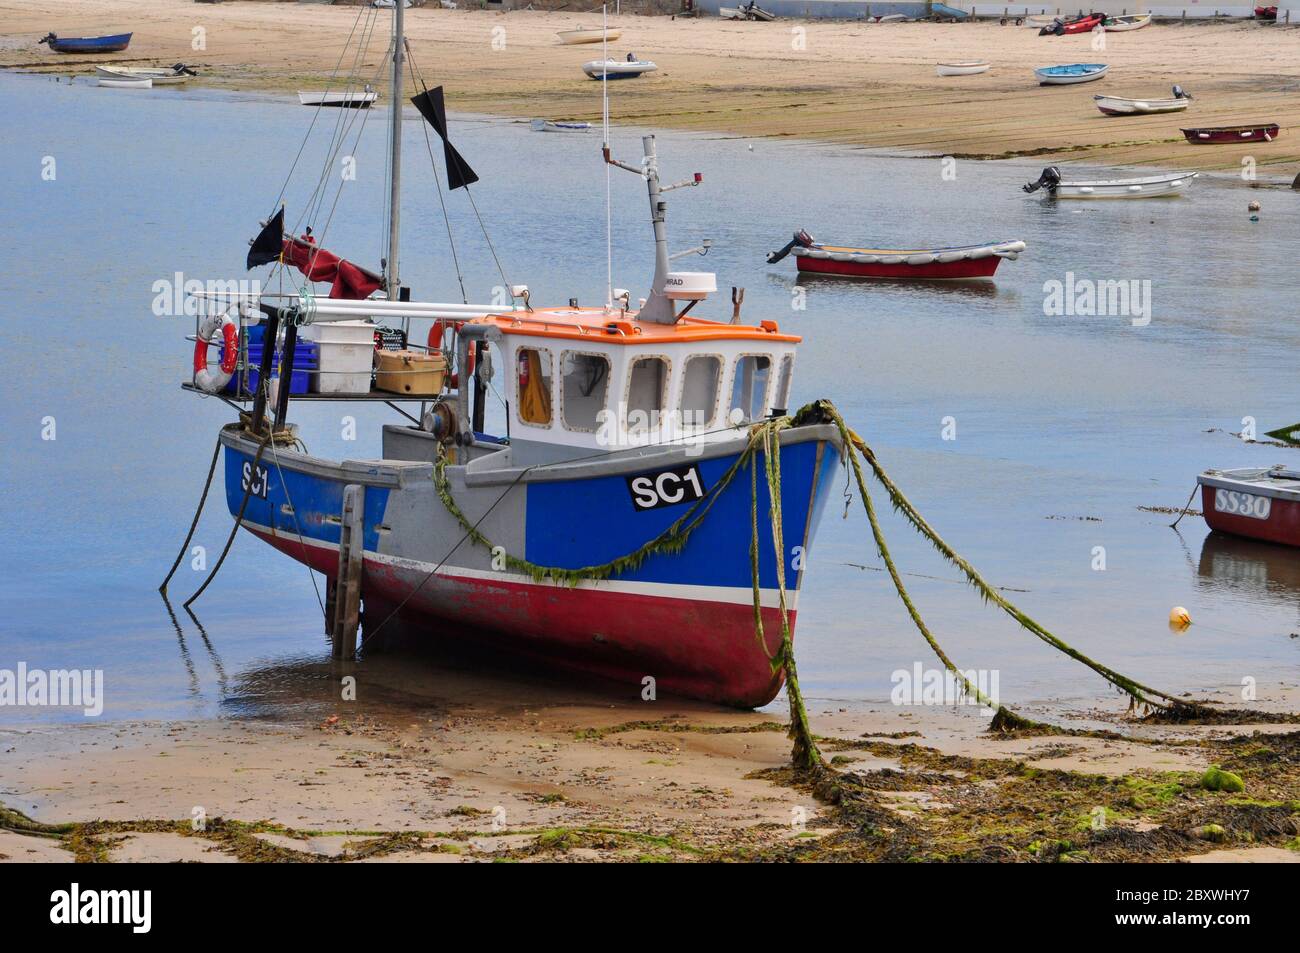 Ein Fischerboot für Zwiebeln, das bei Ebbe im Hafen von Hugh Town auf St. Mary's, der Hauptinsel der Scilly-Inseln vor der Küste, festgemacht wird Stockfoto